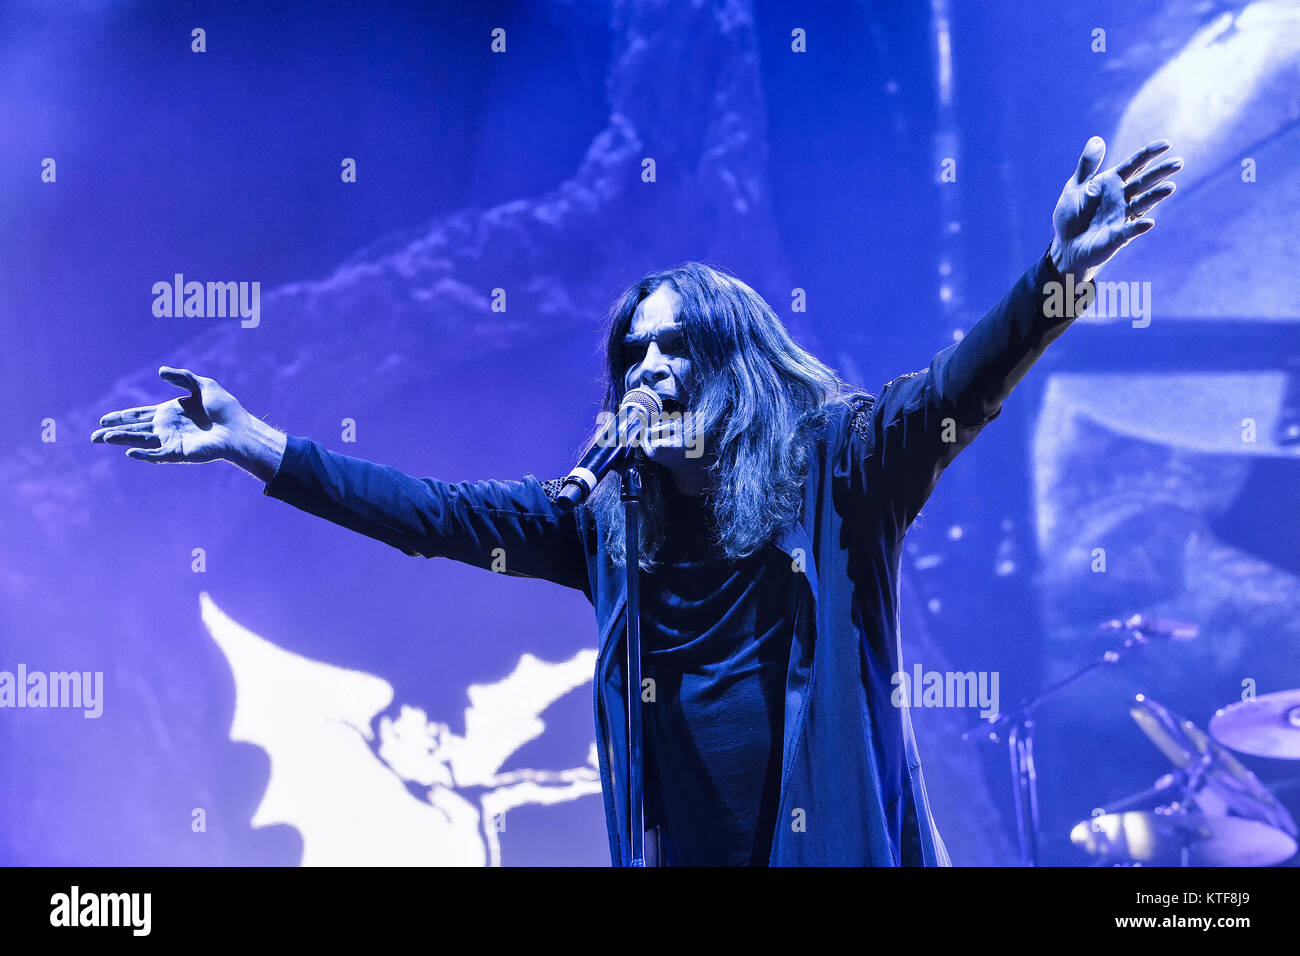 Le groupe de rock anglais Black Sabbath effectue un concert live à Telenor Arena d'Oslo. Ici singer et Plat-célébrité Ozzy Osbourne est vu sur scène. La Norvège, 24/11 2013. Banque D'Images